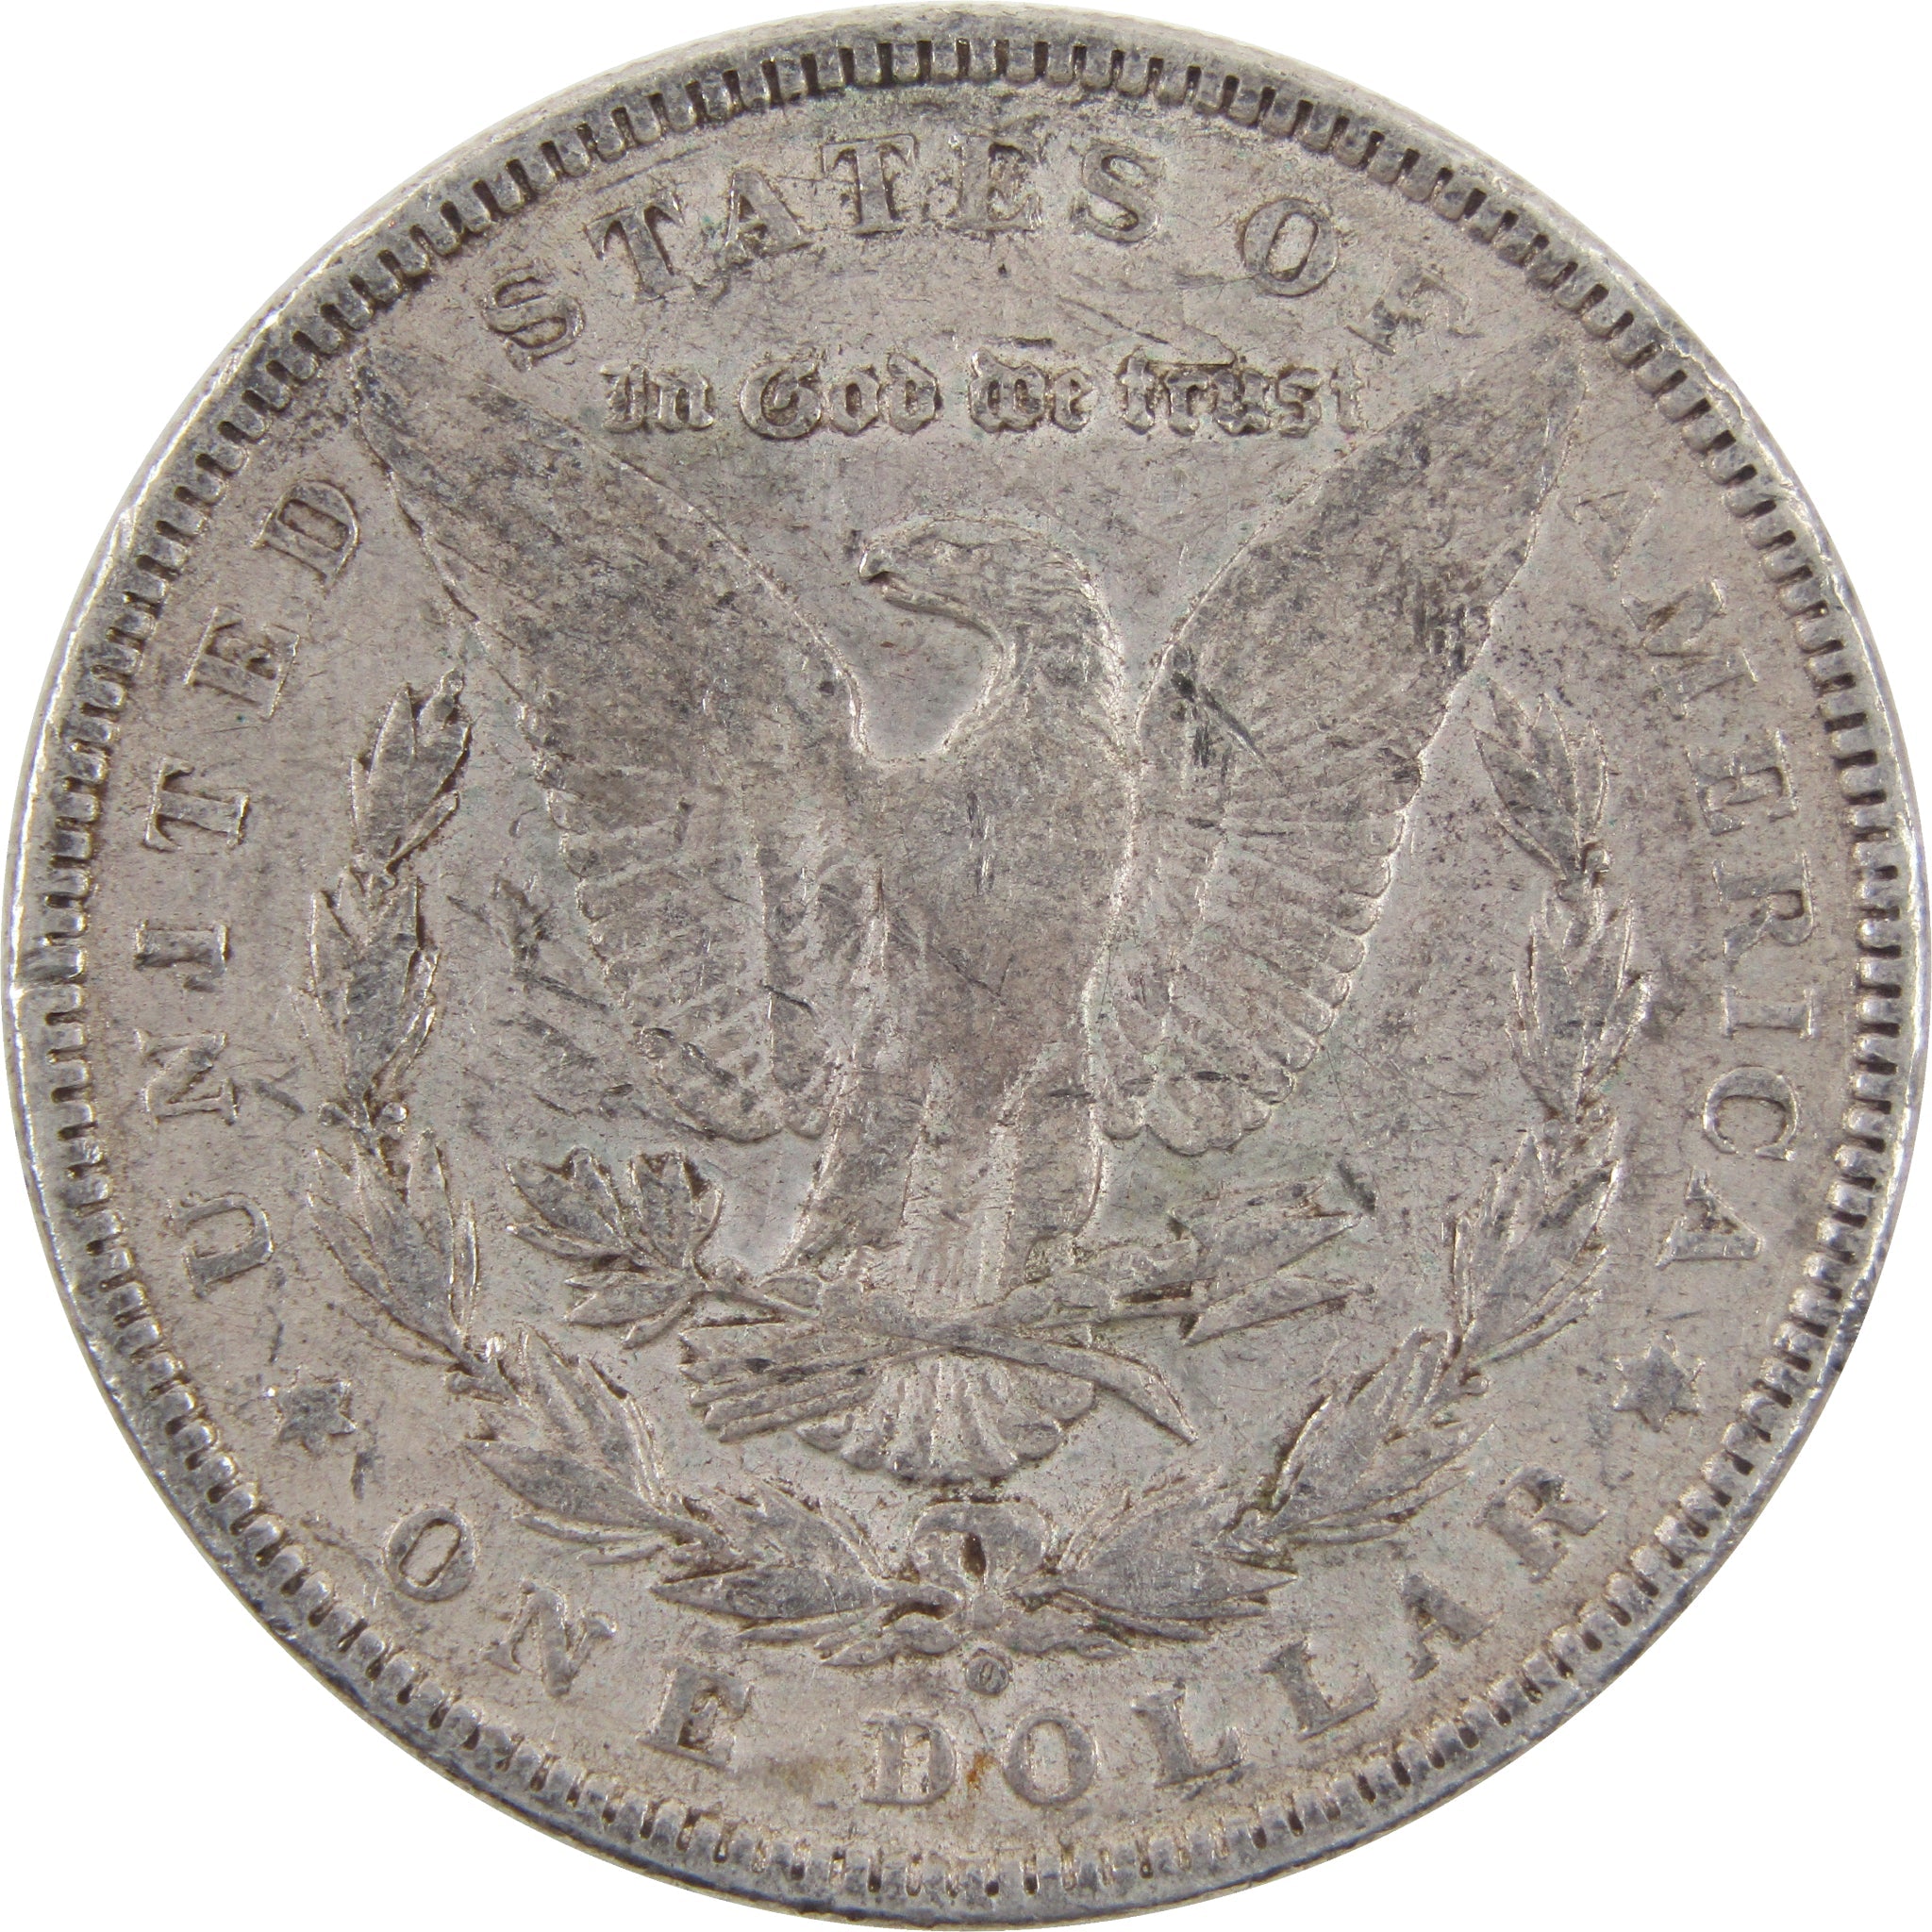 1902 O VAM 3 Micro O Morgan Dollar XF 90% Silver $1 Coin SKU:I2615 - Morgan coin - Morgan silver dollar - Morgan silver dollar for sale - Profile Coins &amp; Collectibles